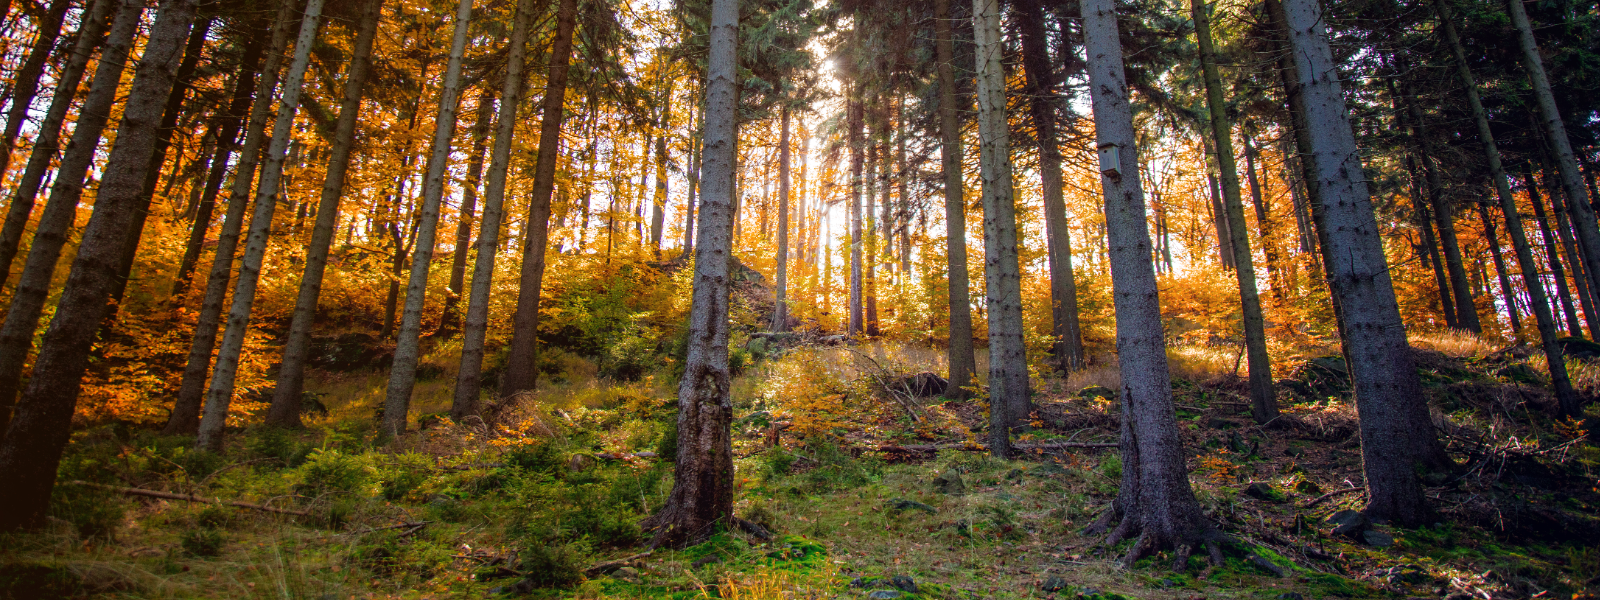 HANSATRUST OÜ - Hansatrust tegeleb eksperttasemel metsamajandusega, pakkudes kõike alates metsa planeerimisest ja raiede...